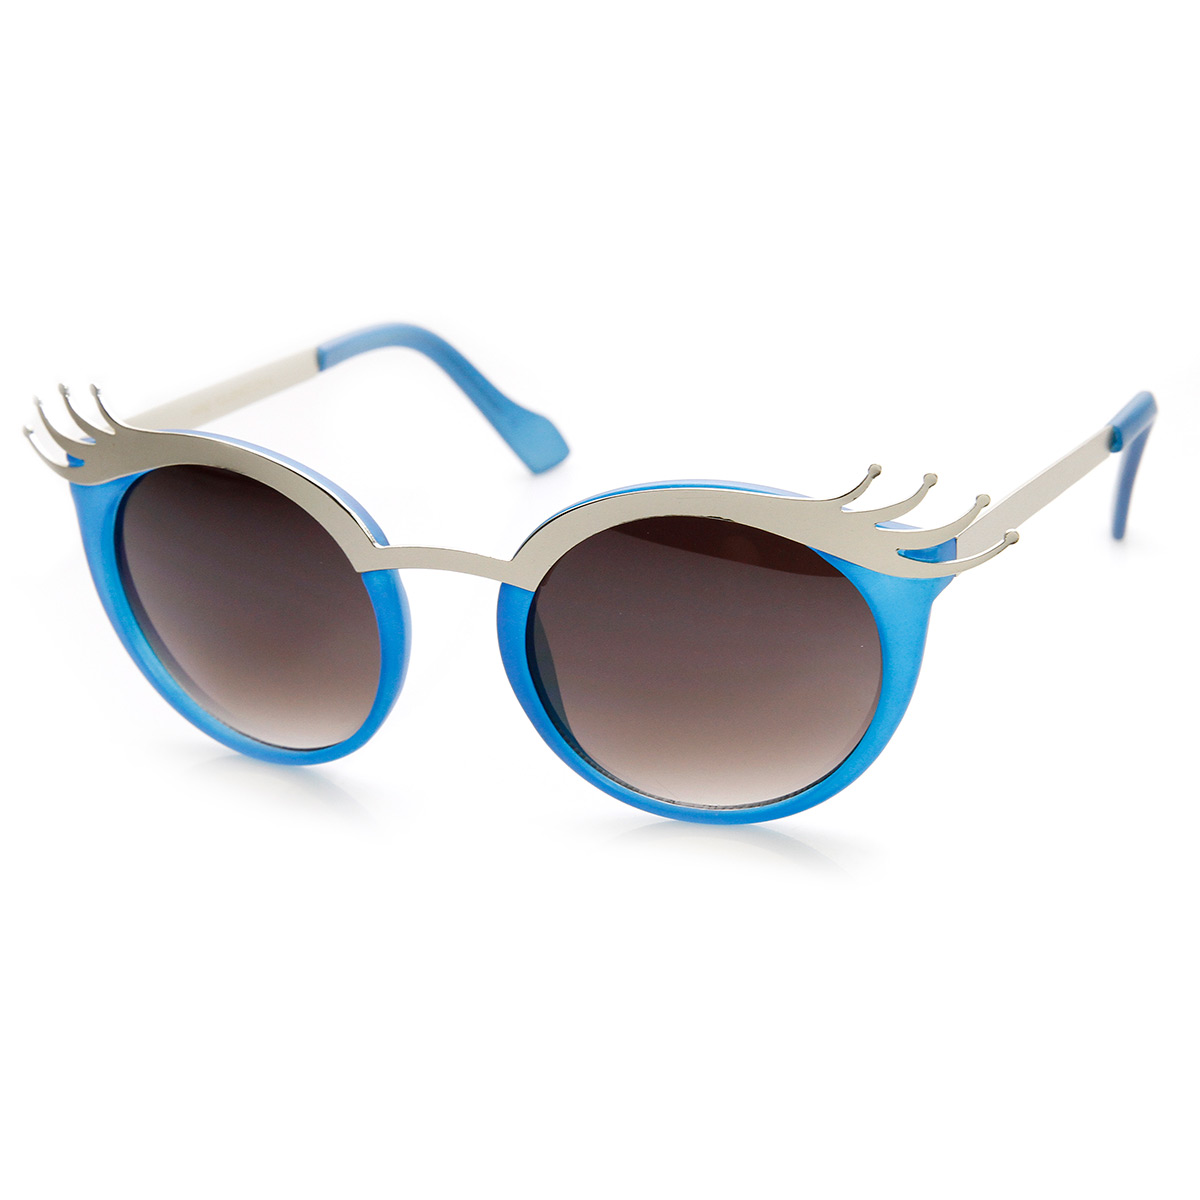 Womens Fashion Cute Eyelash Retro Round Sunglasses Ebay